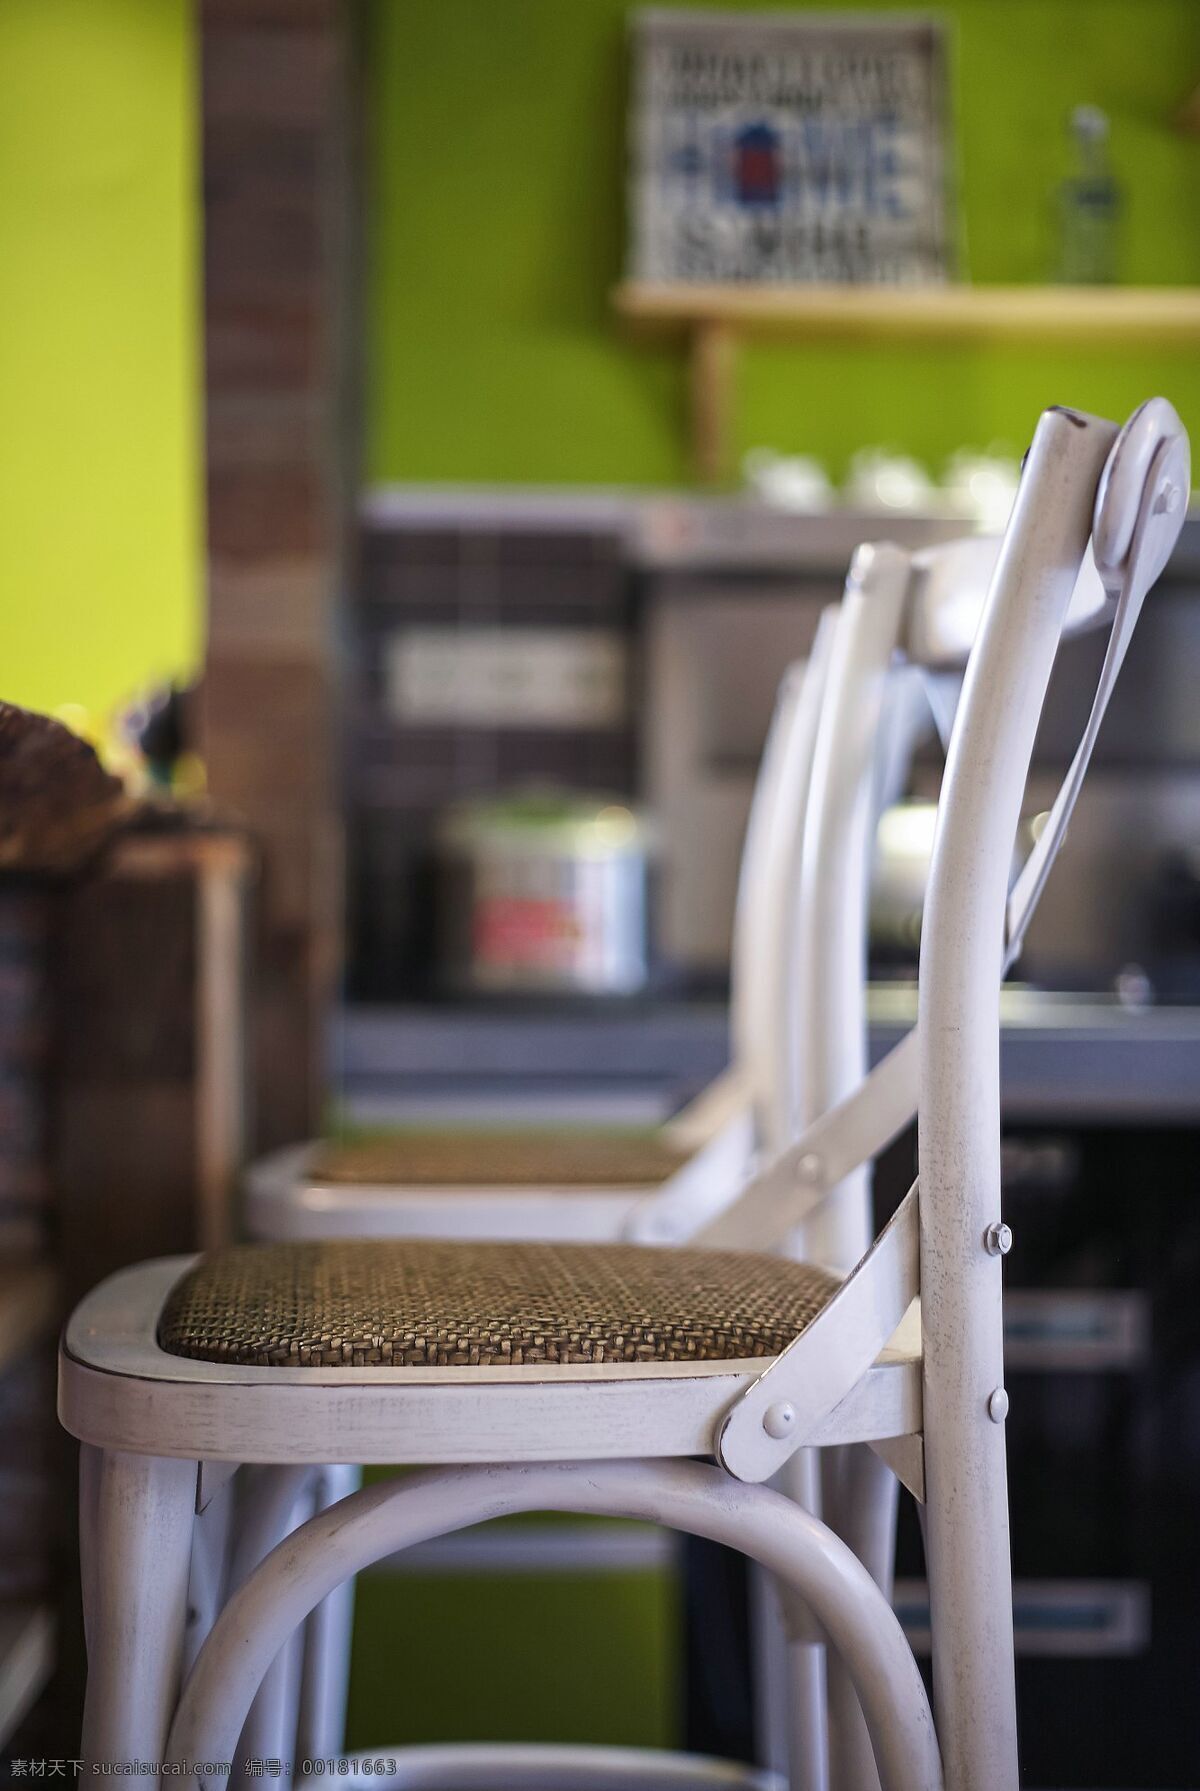 现代 简约 餐厅 椅子 设计图 家居 家居生活 室内设计 装修 室内 家具 装修设计 环境设计